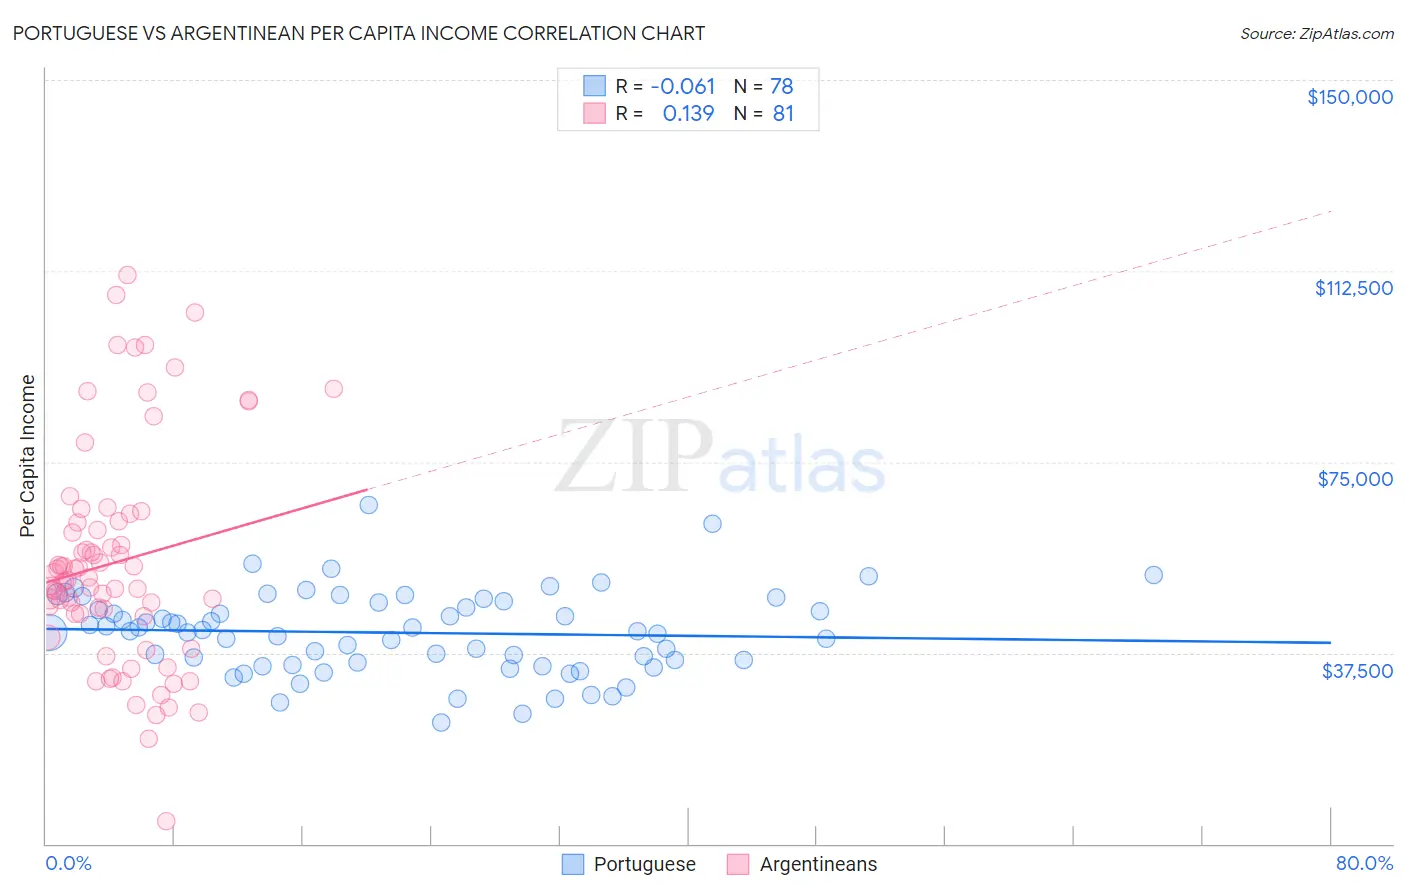 Portuguese vs Argentinean Per Capita Income